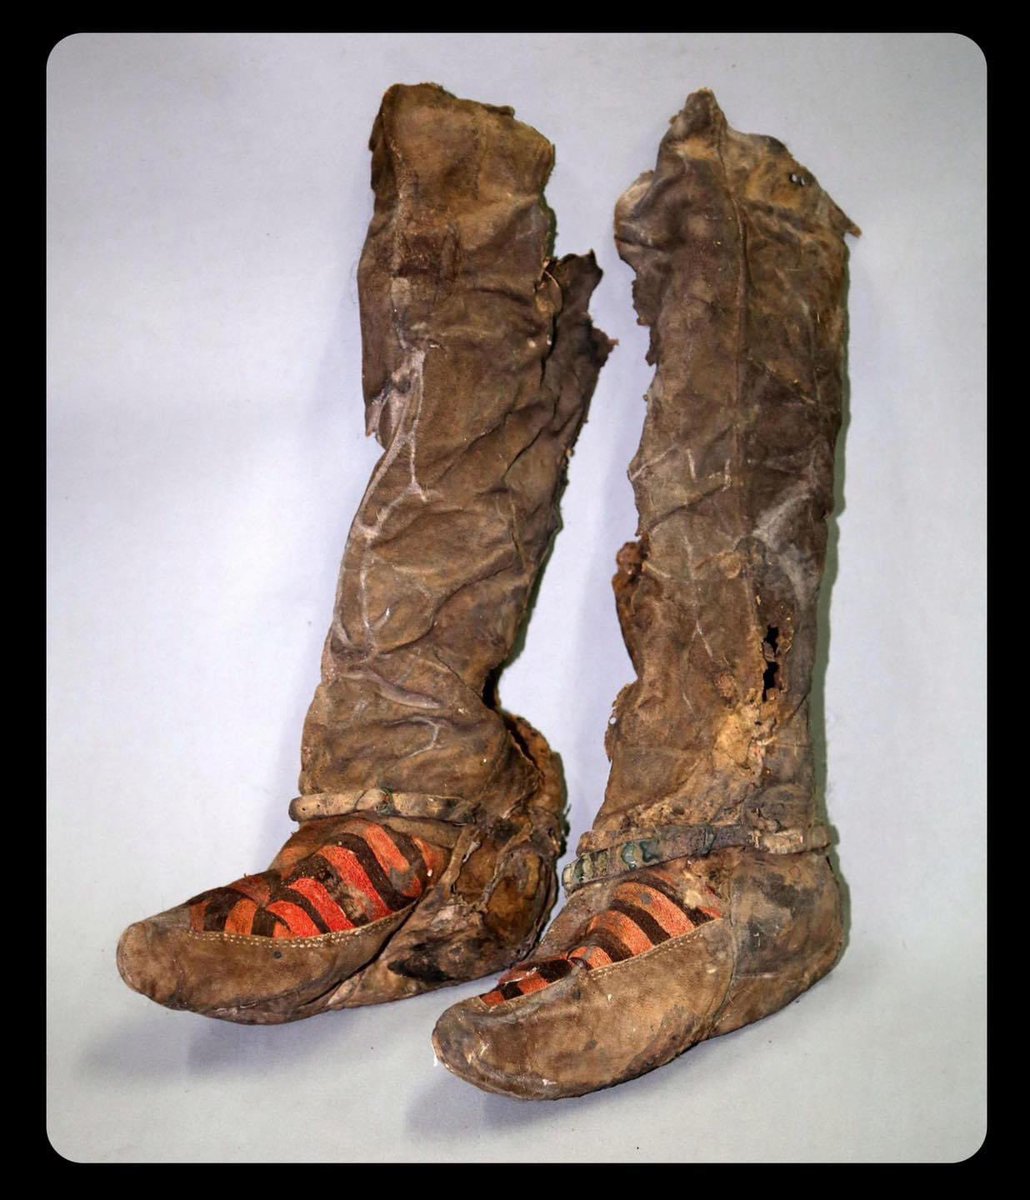 Монголын Алтайн нурууны 1100 жилийн настай гутал: Эдгээр гутлыг нарийн урласан хувцас, оёдлын хэрэгслээр оршуулсан эмэгтэйн цогцосноос олдсон нь түүнийг оёдолчин байсан байж магадгүй гэж судлаачид үзэхэд хүргэжээ. ( Forgotten History)